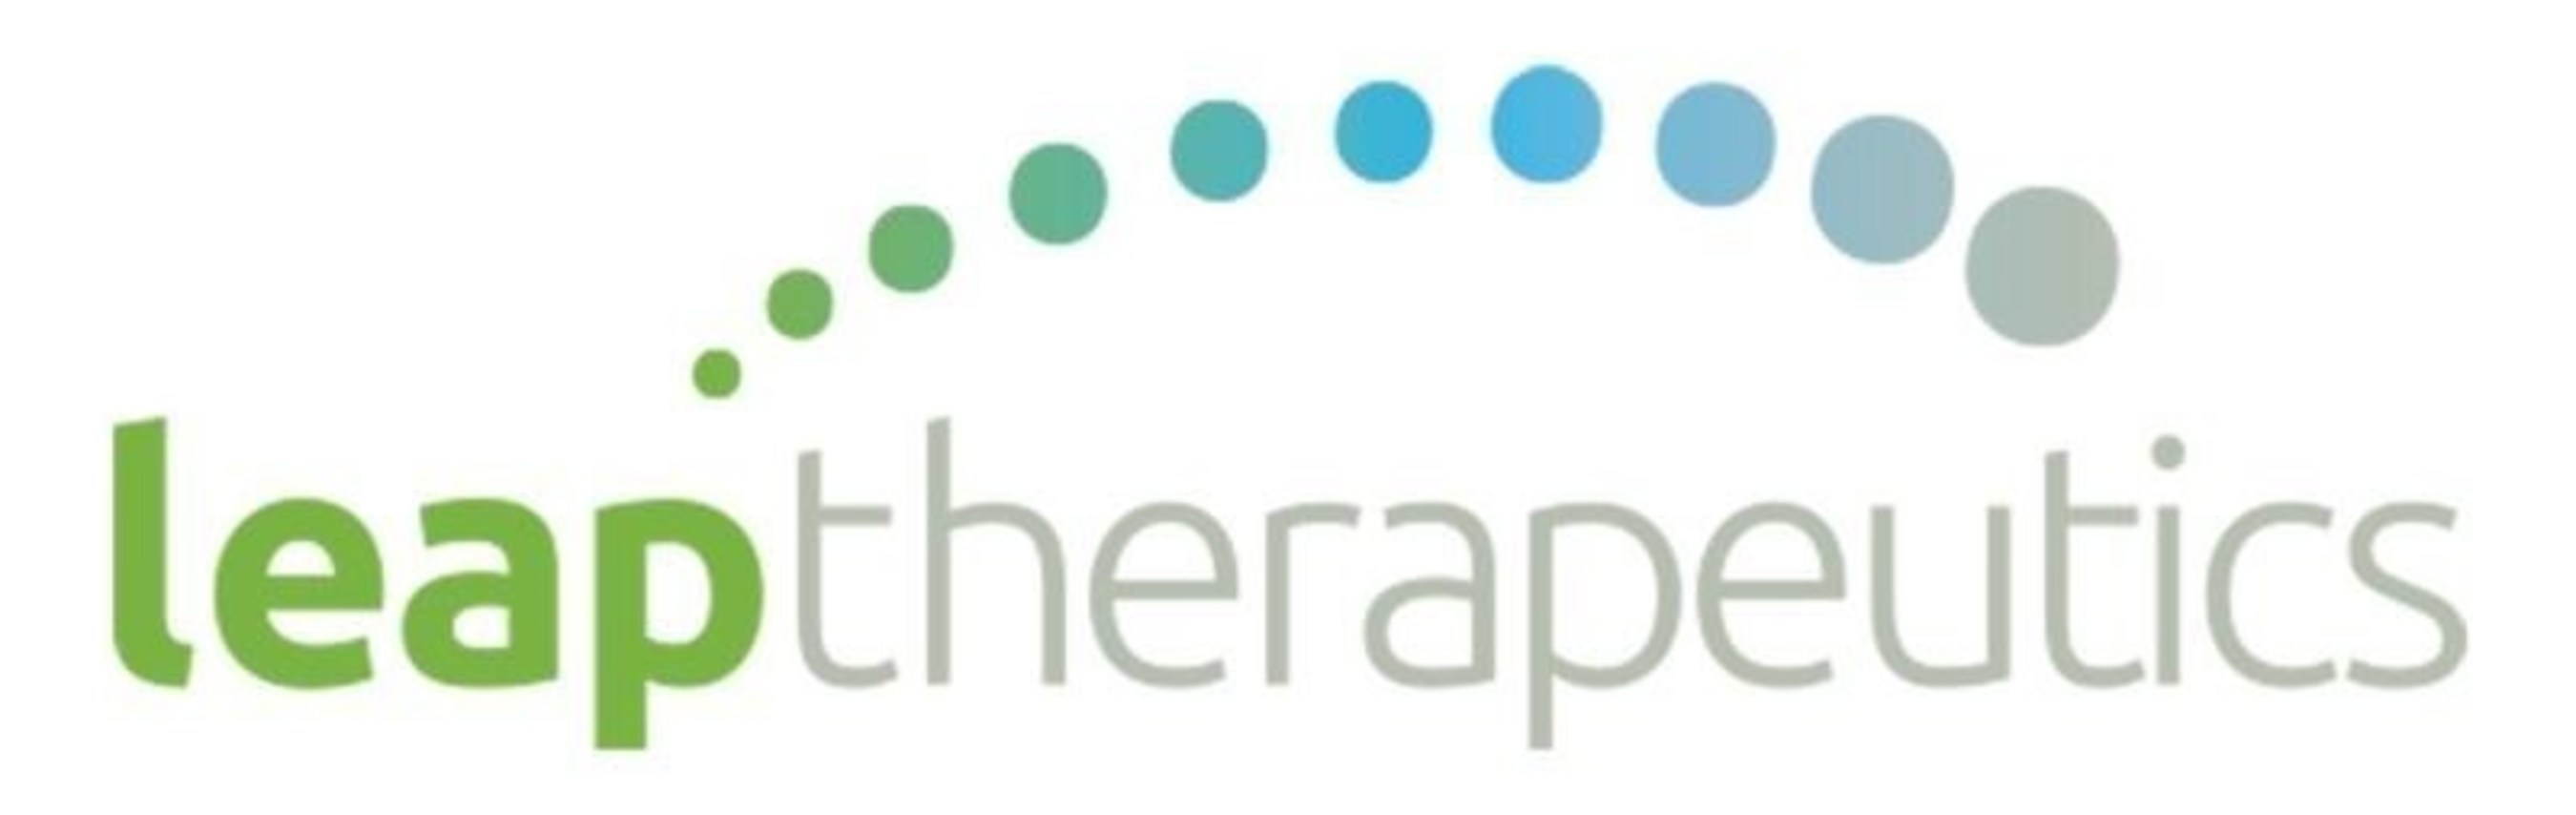 Leap Theraputics Logo (PRNewsFoto/Macrocure Ltd.)